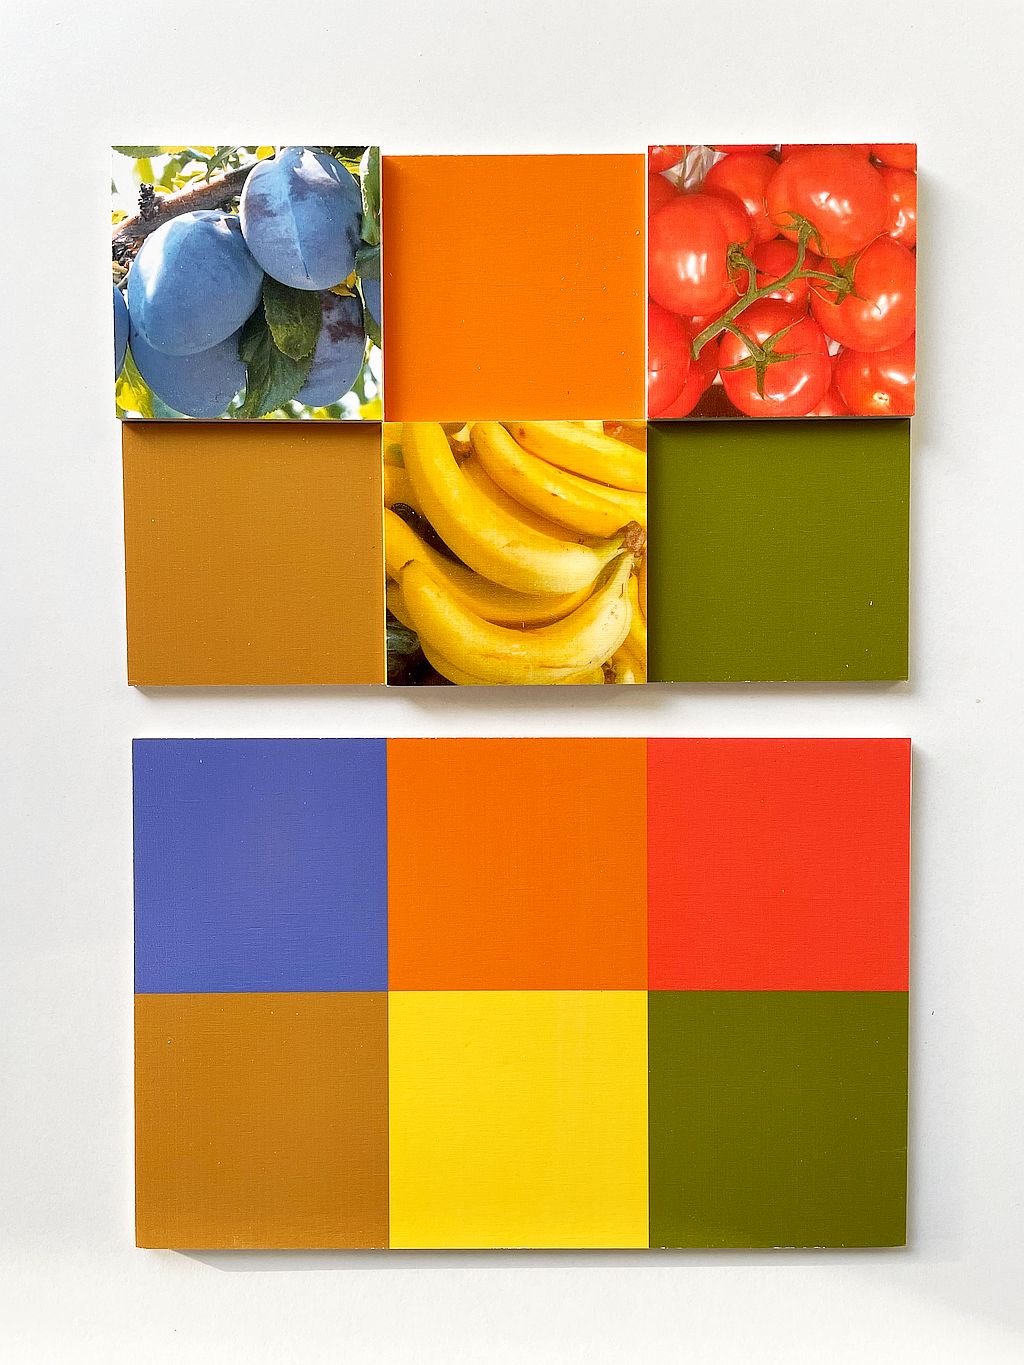 Lottospel - combineren van kleuren, groenten en fruit